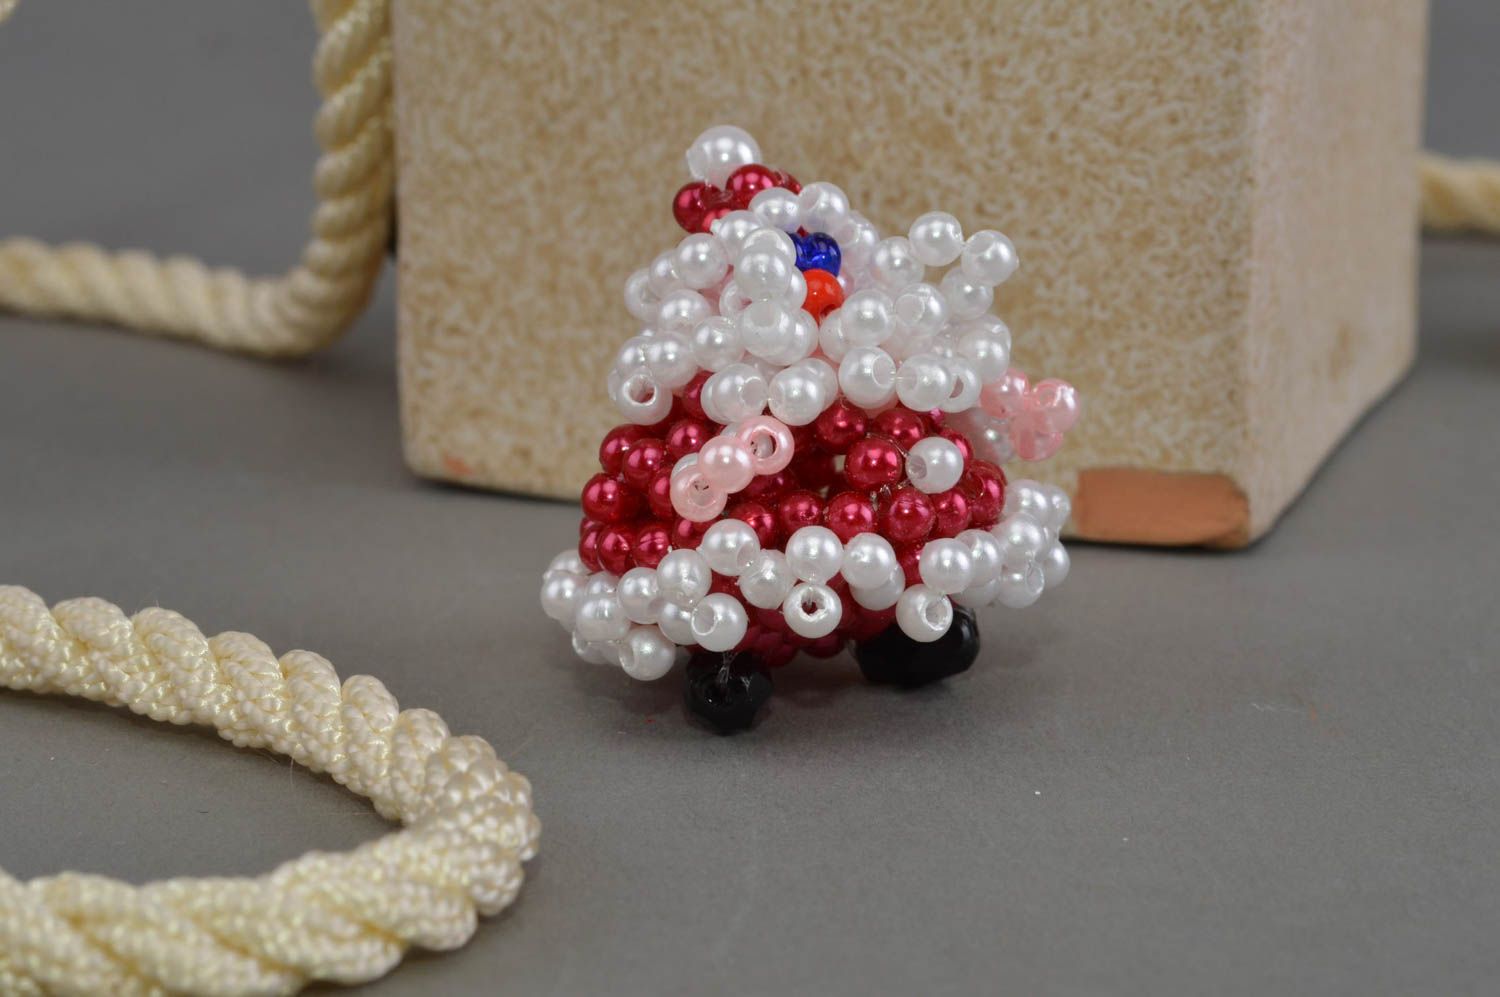 Бисерная фигурка Санта-Клауса ручной работы маленькая для новогоднего декора фото 1